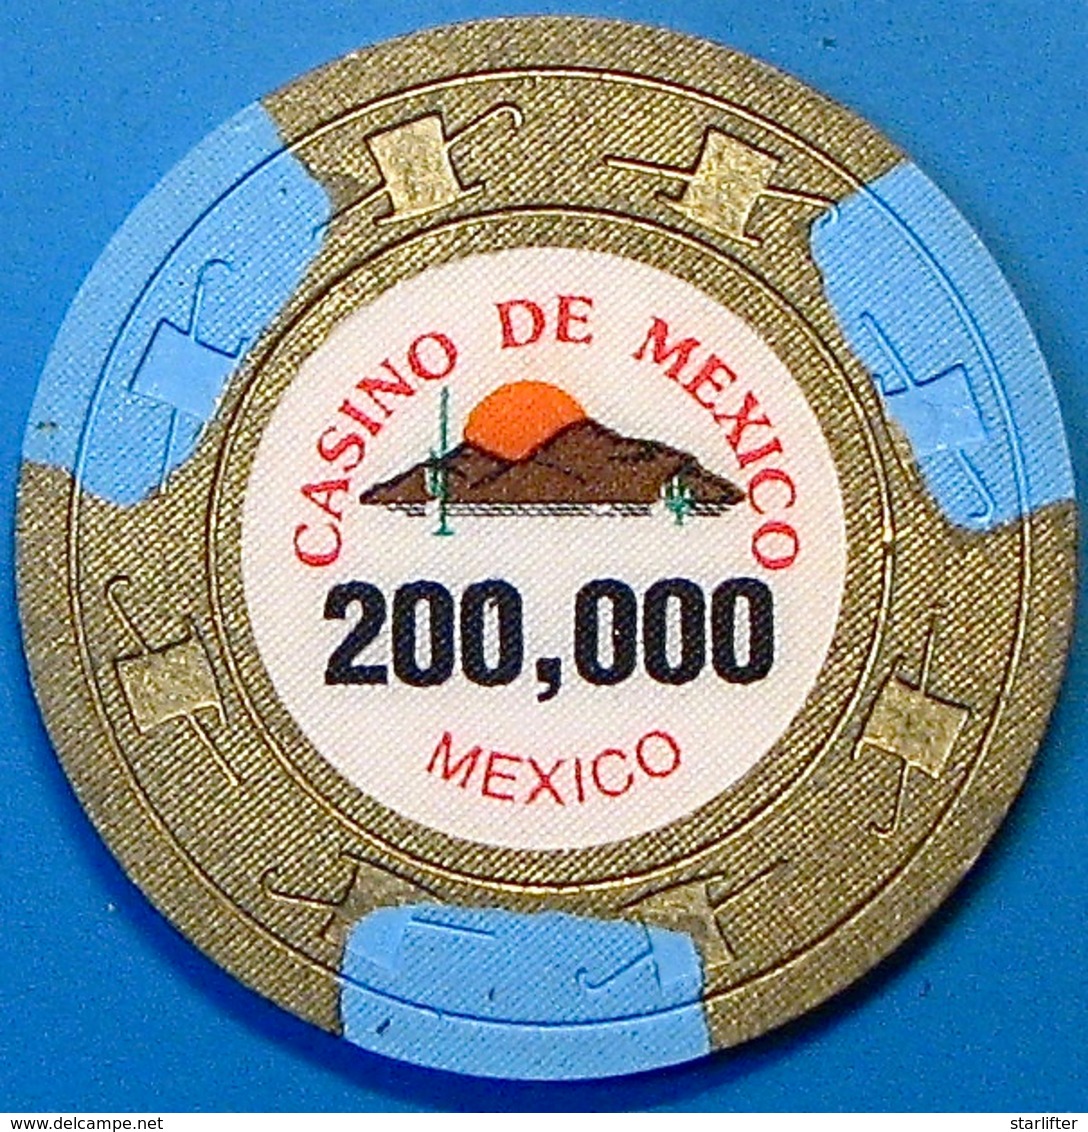 P200,000 Casino Chip. Casino De Mexico, Mexico. N42. - Casino